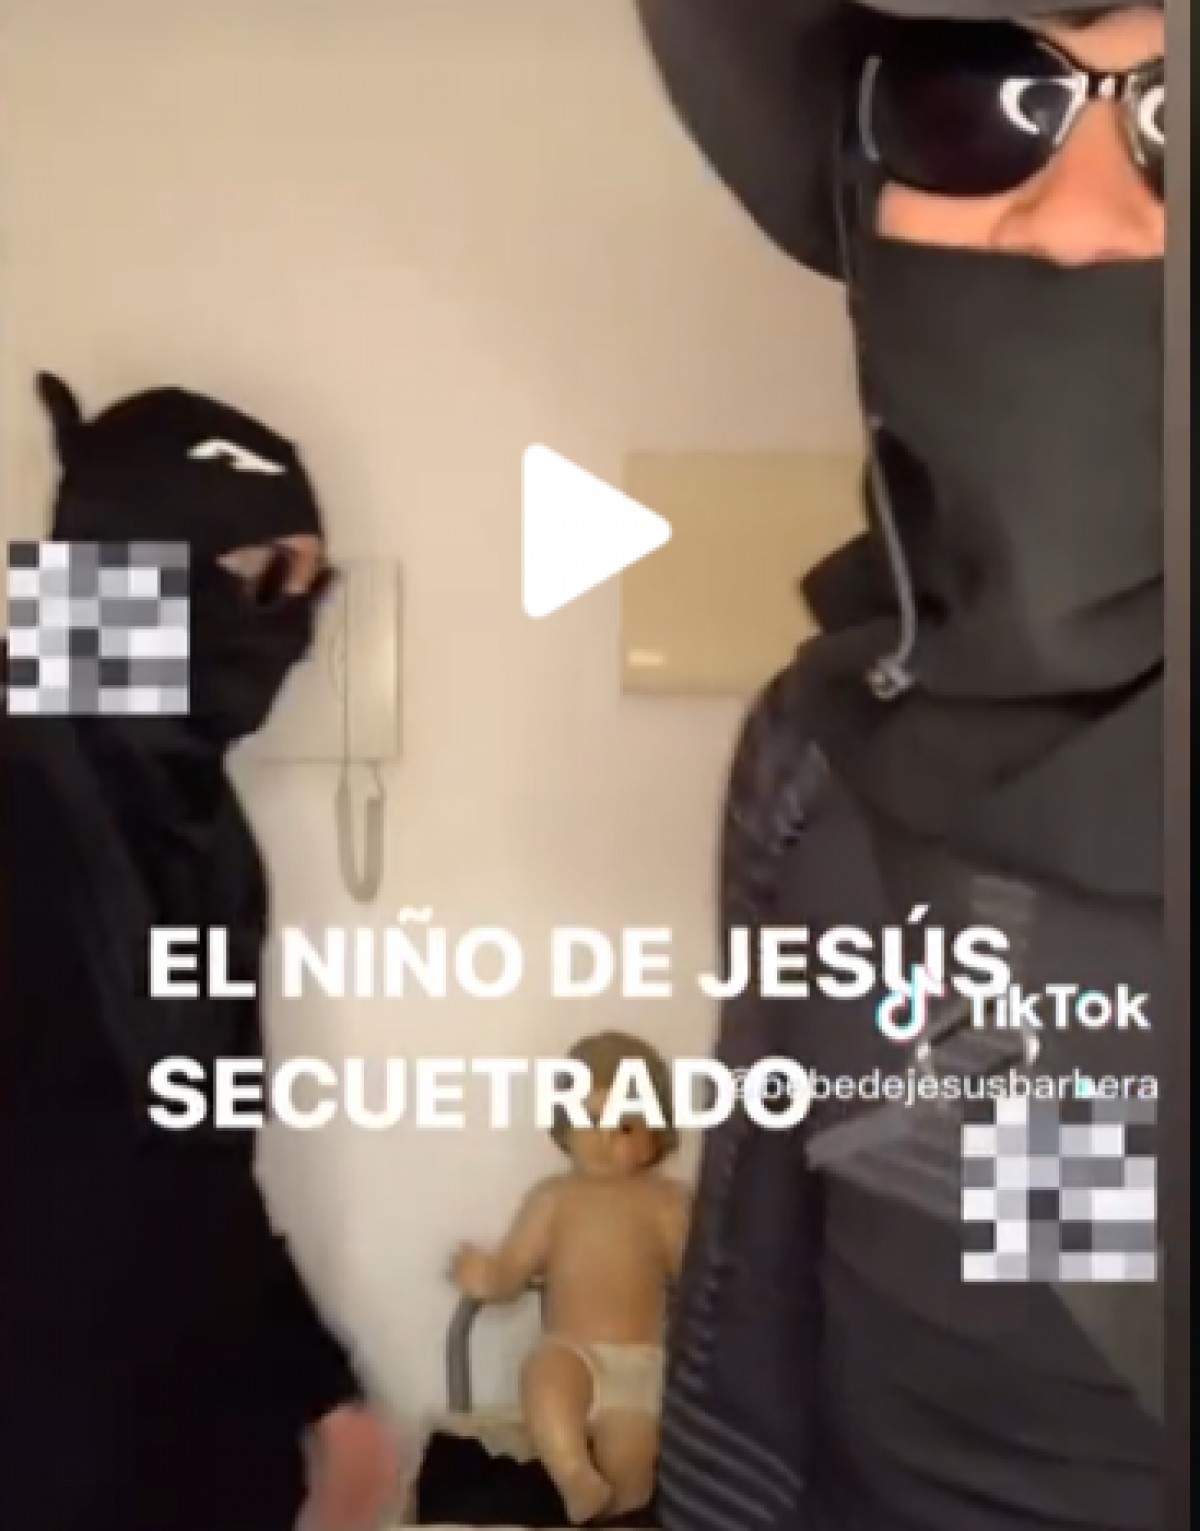 Els dos nois que van dur a terme el robatori del nen Jesús, gravant-se en vídeo demanant el rescat